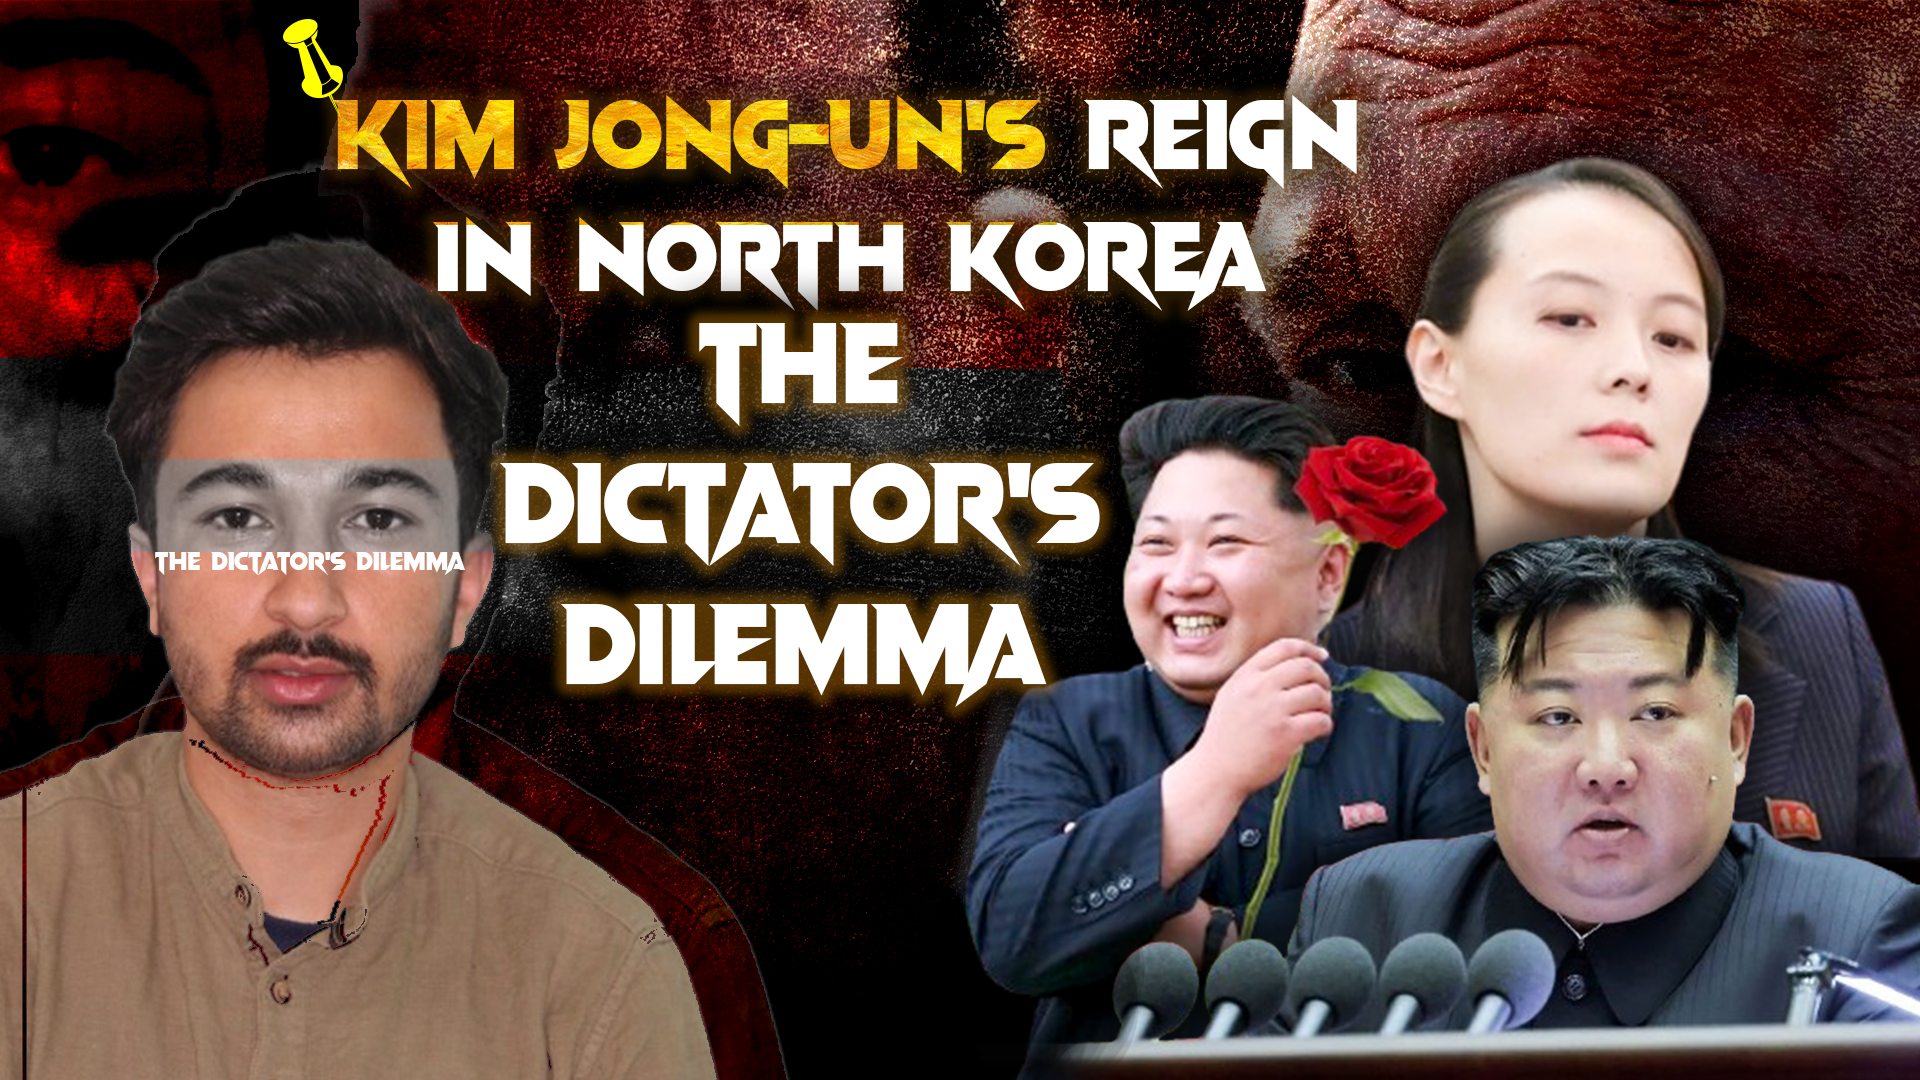 Kim Jong-Un: A Modern Dictator's Dilemma